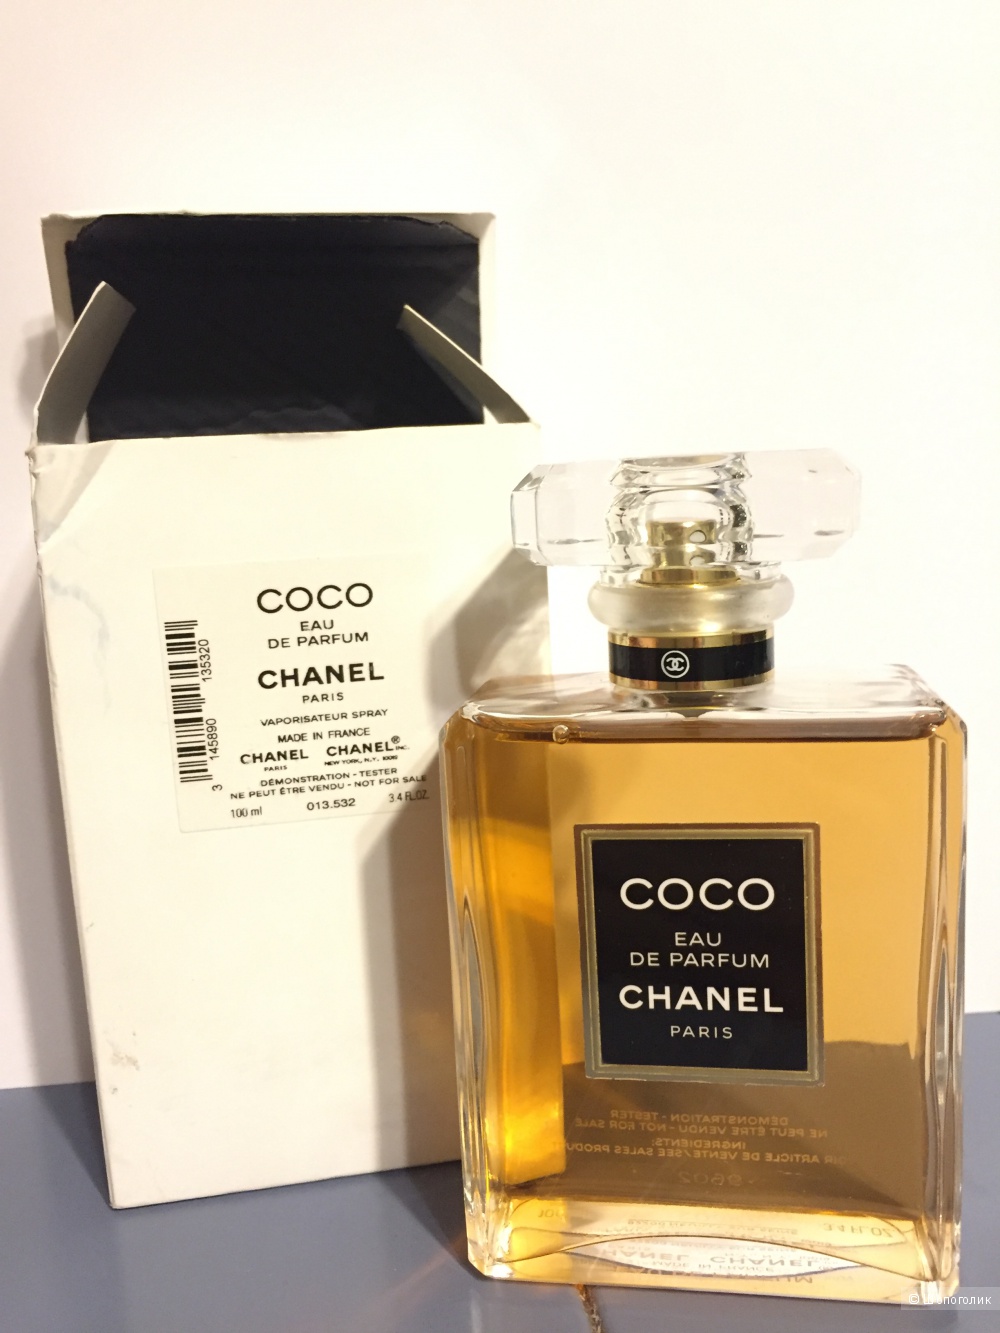 COCO eau de parfum, 100 ml